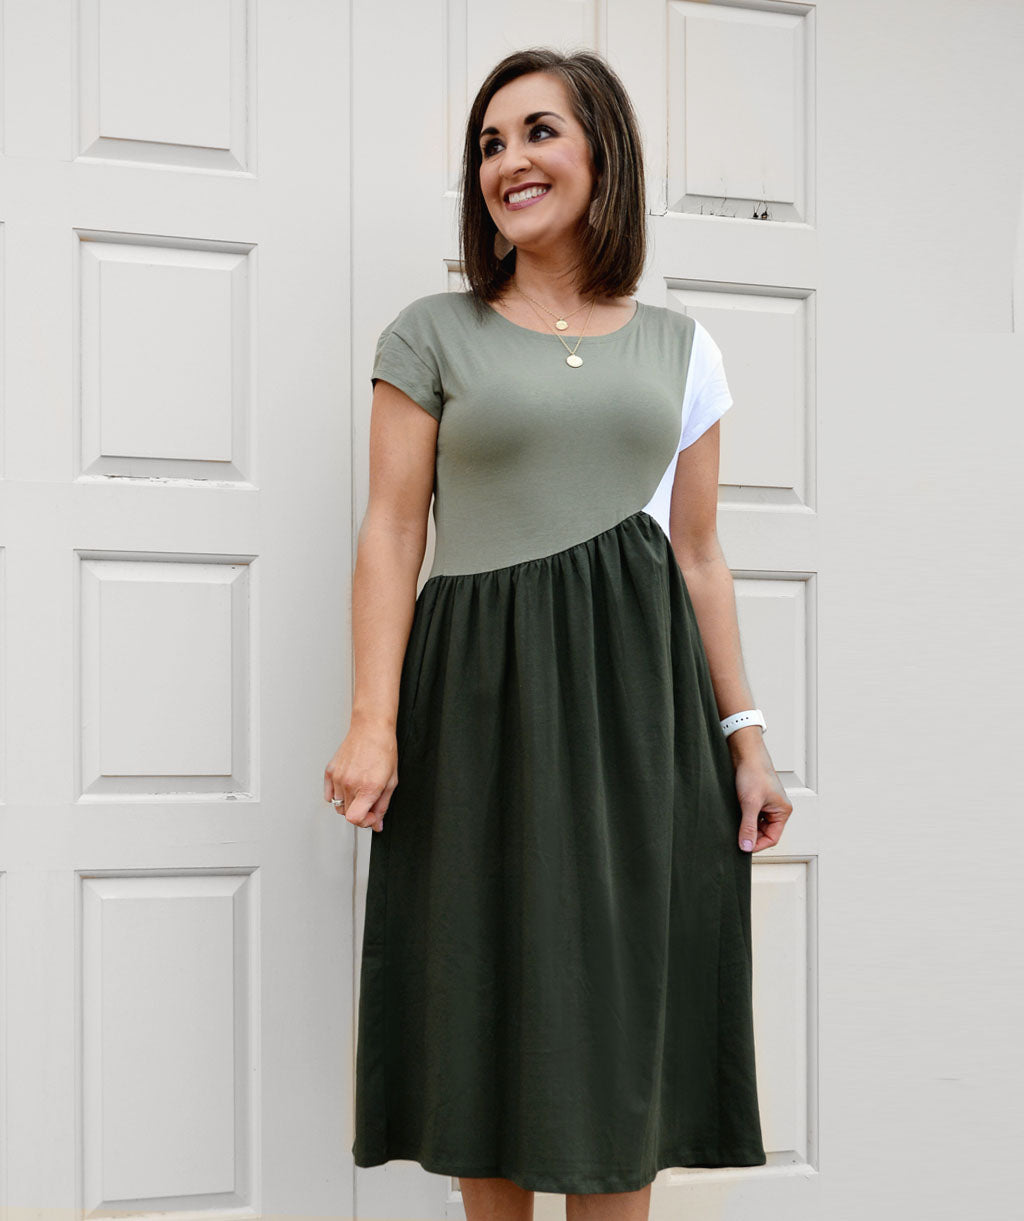 NOVA colorblocked dress in Olive/White